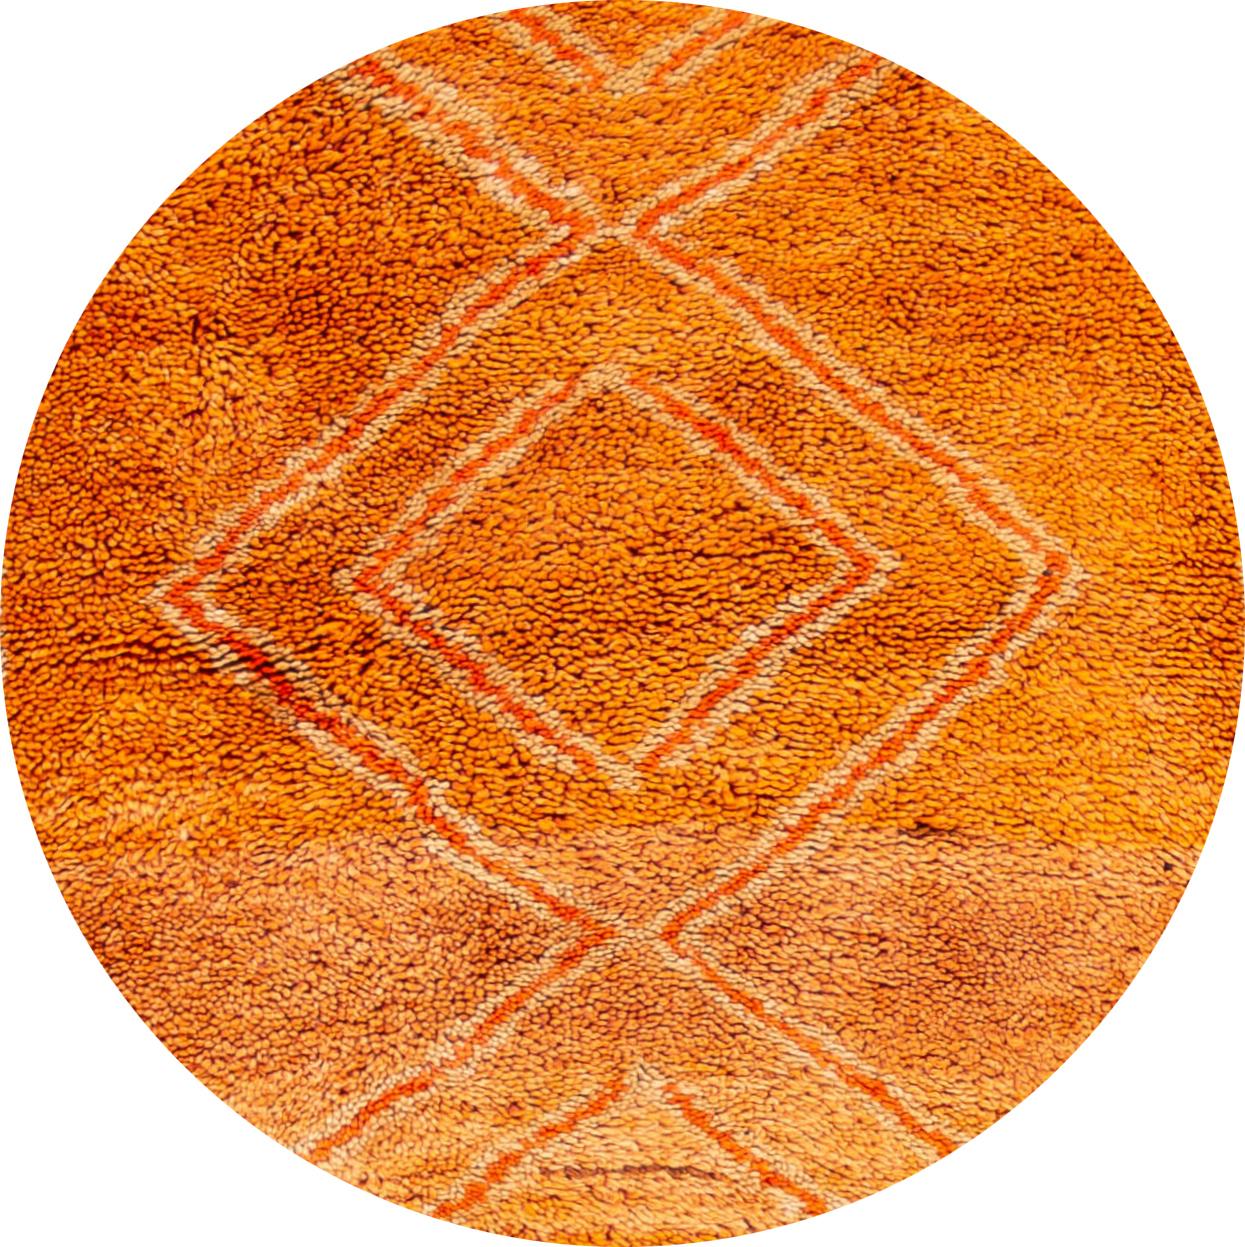 Magnifique chemin de table marocain vintage avec un champ orange vif dans un design géométrique en losanges fins et entrecroisés. Bordures en rouge et noir. 

Ce tapis mesure : 3'5